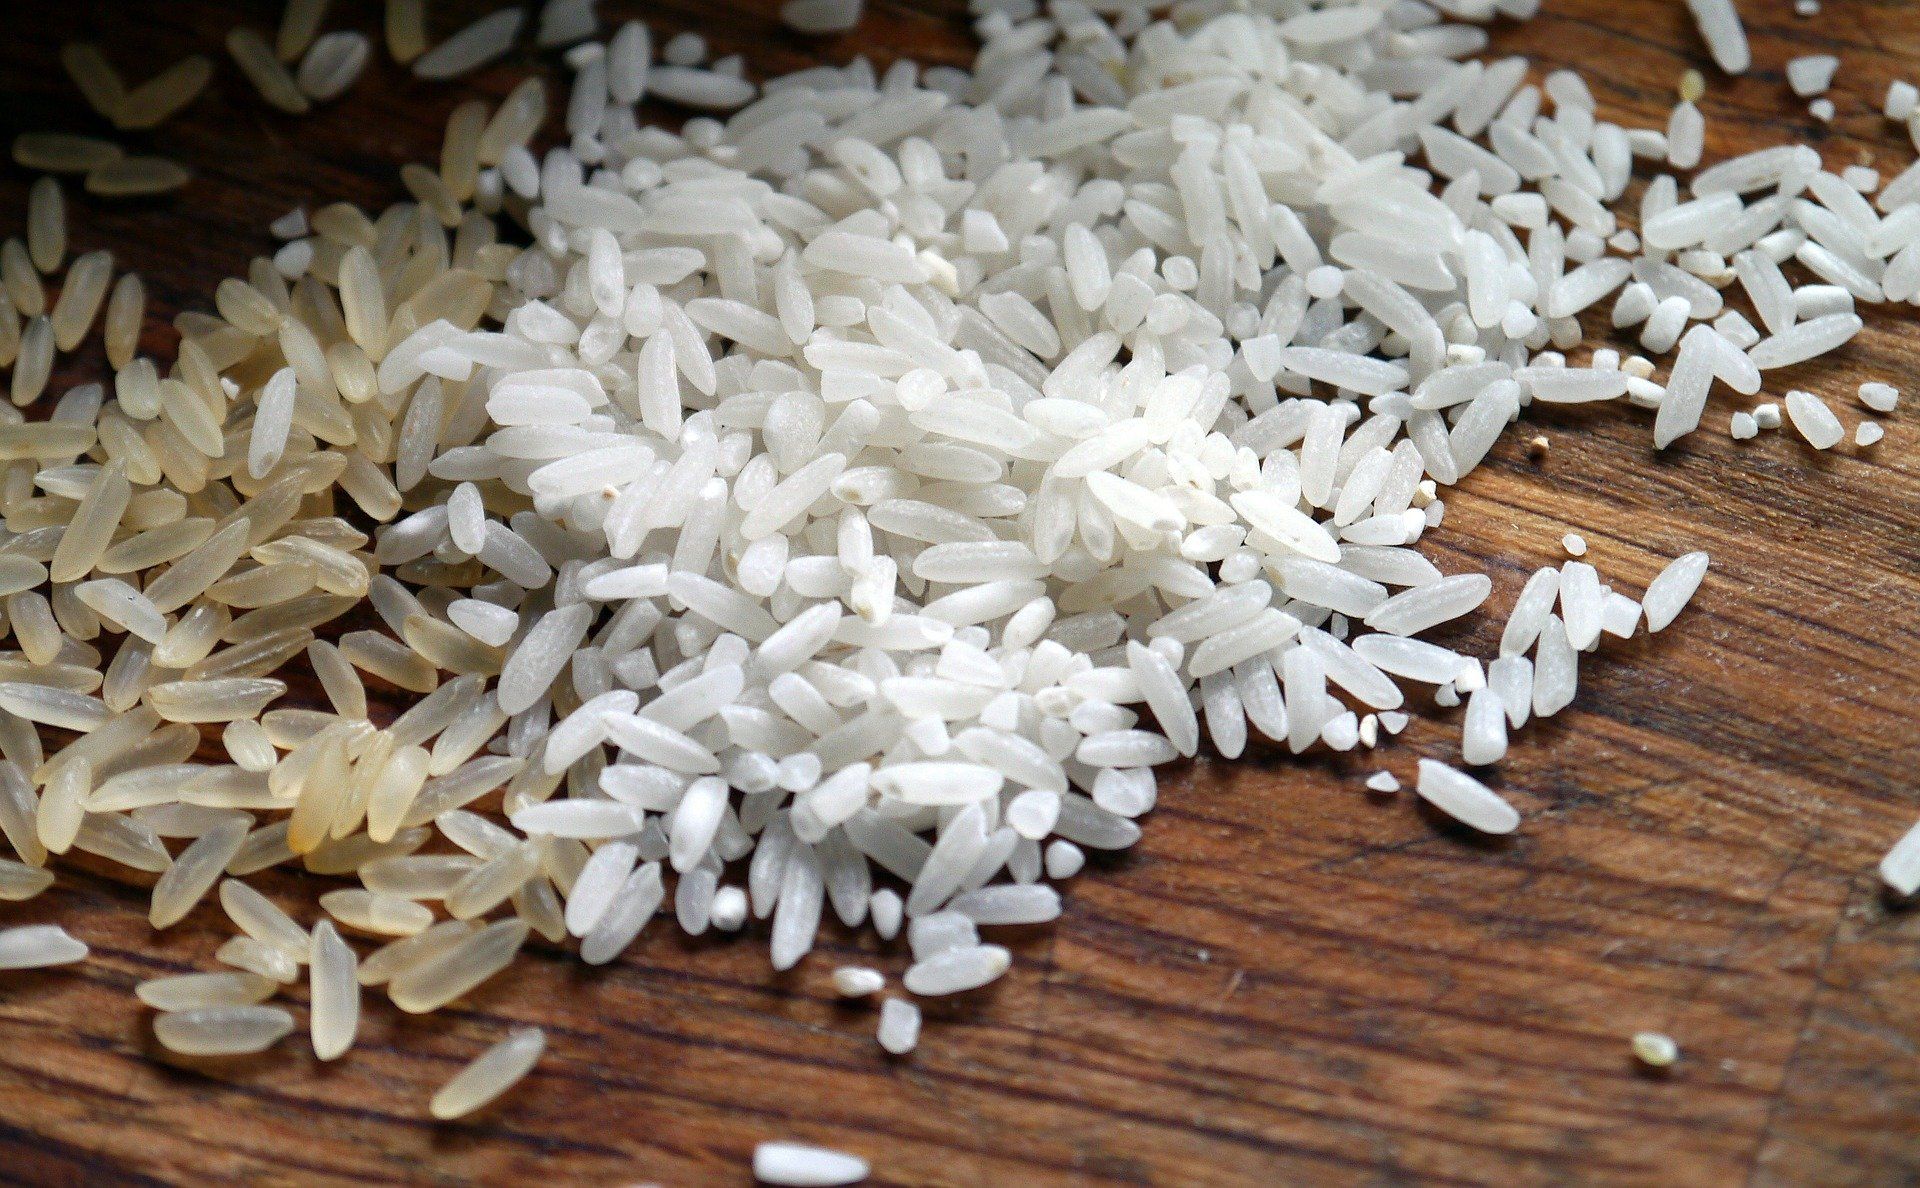 Claves para conseguir el arroz perfecto